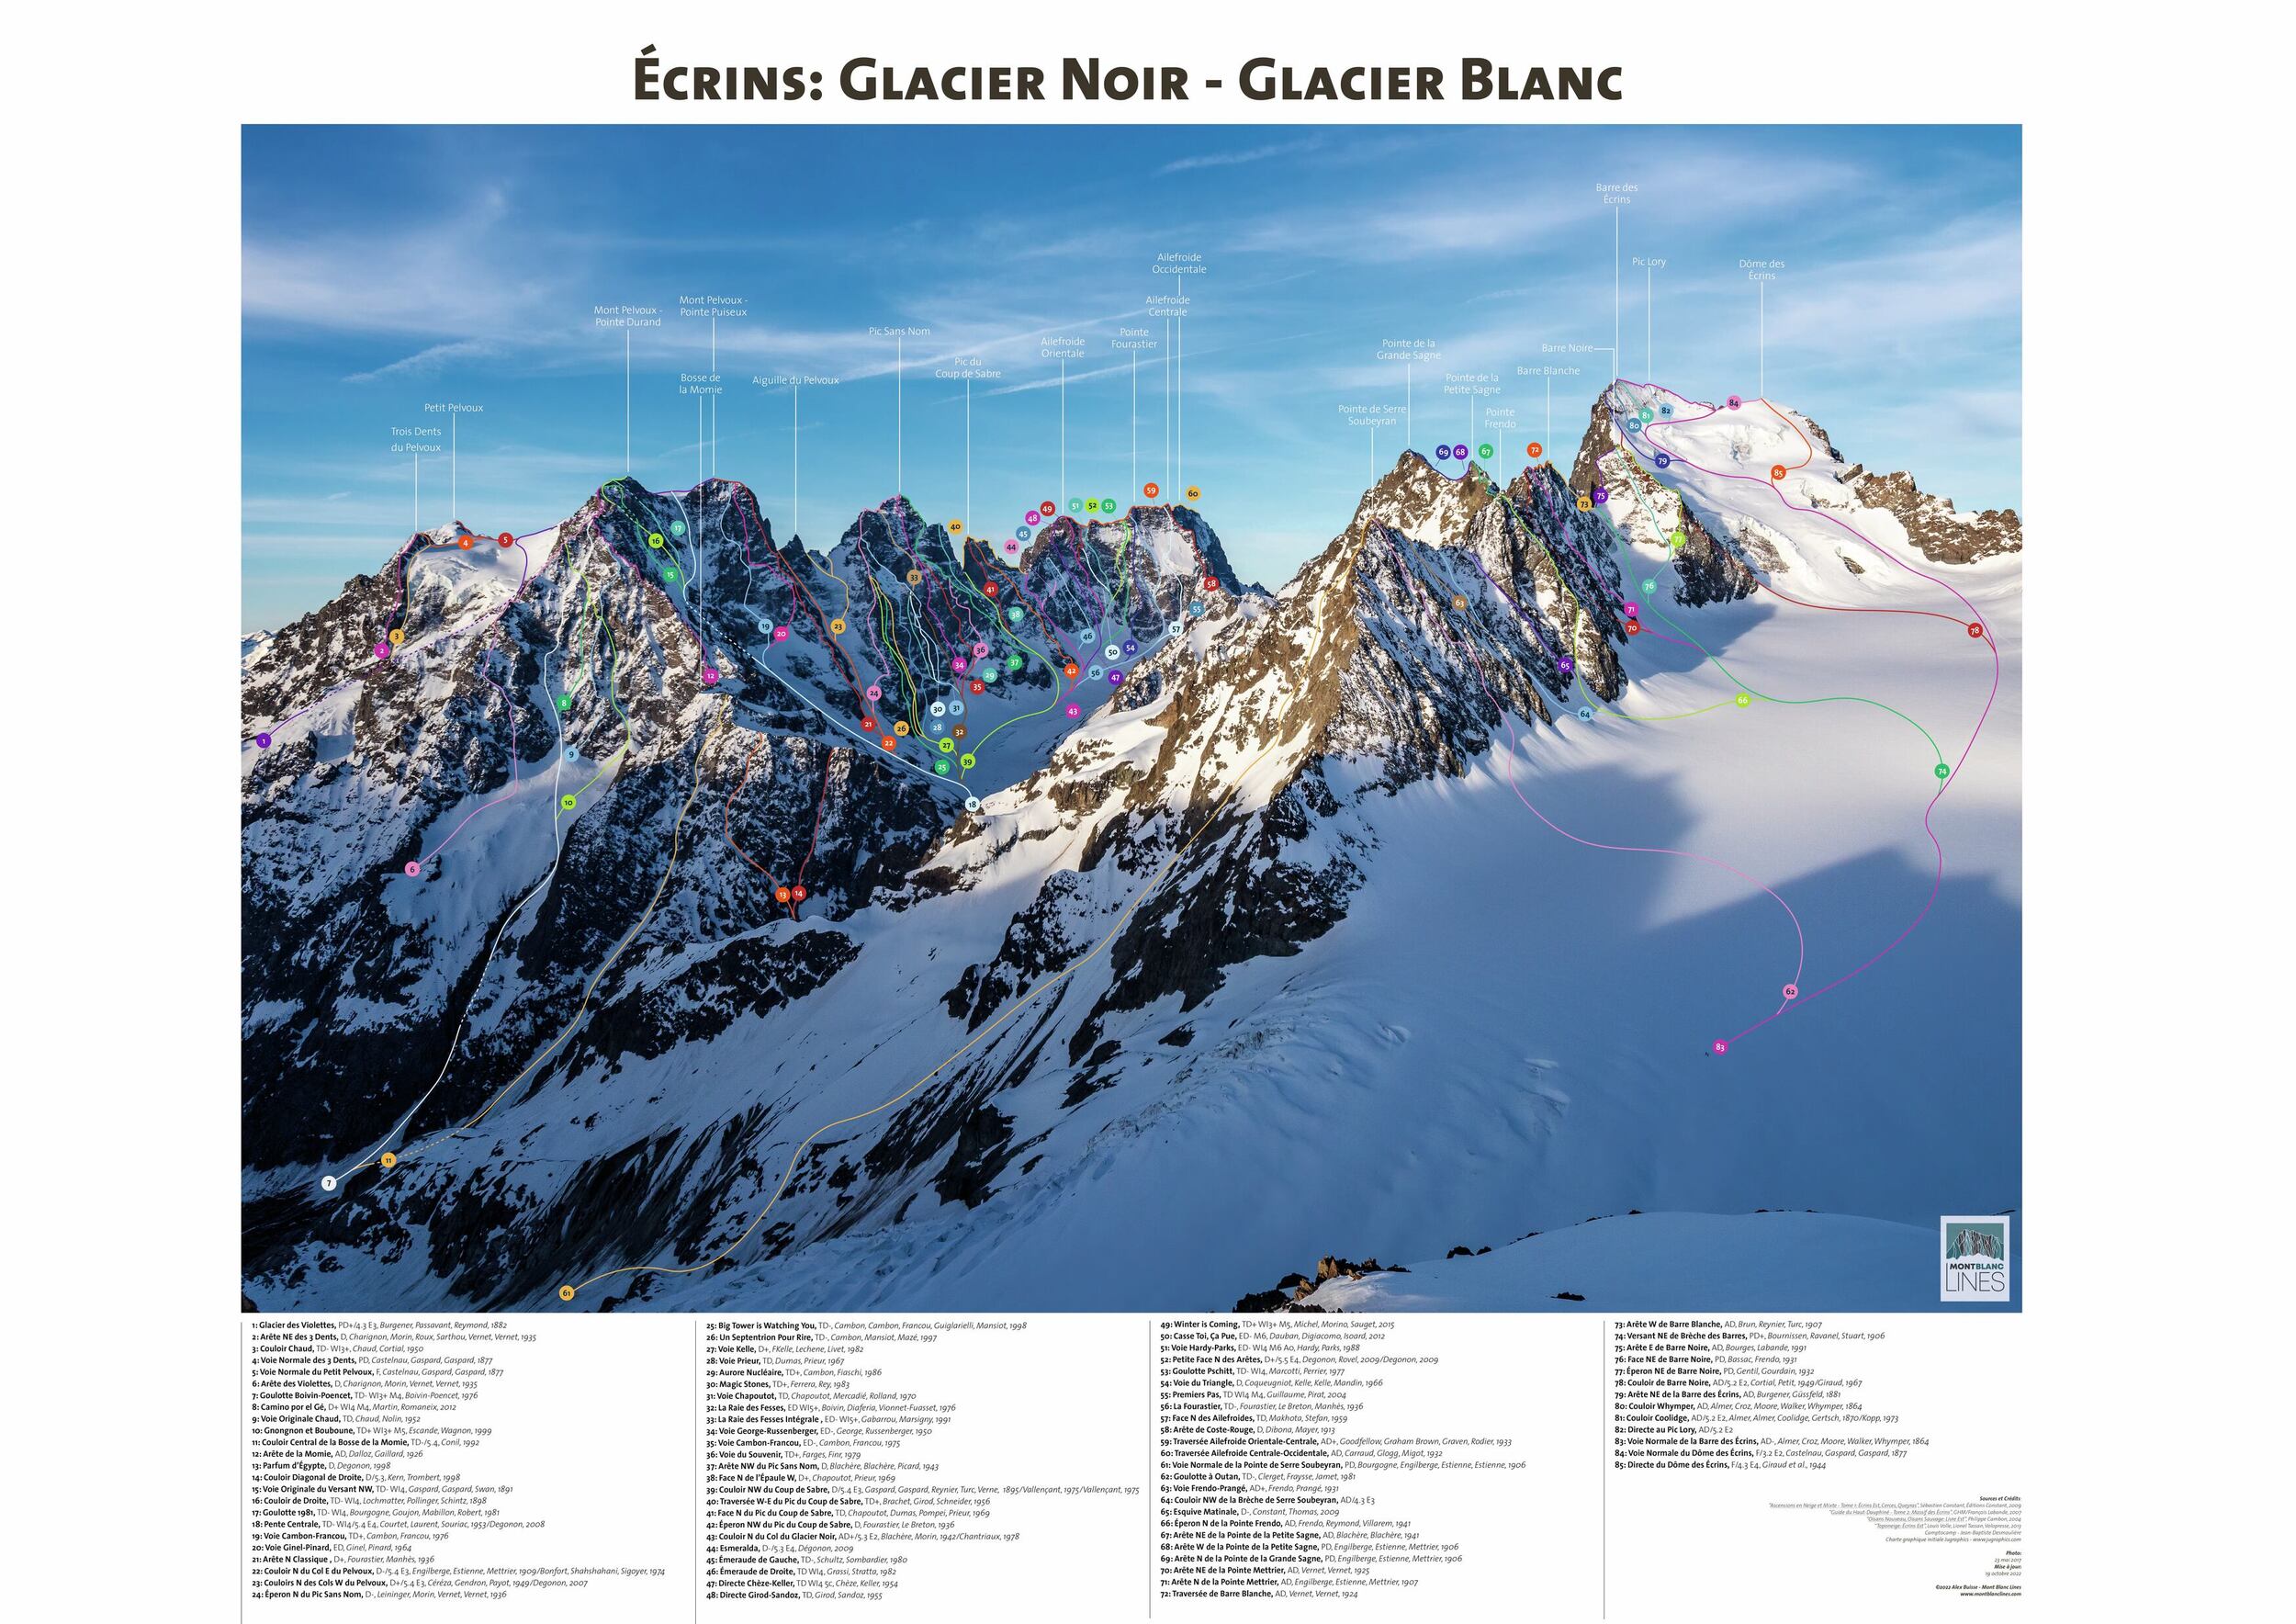 MBL - Glacier Blanc - EU